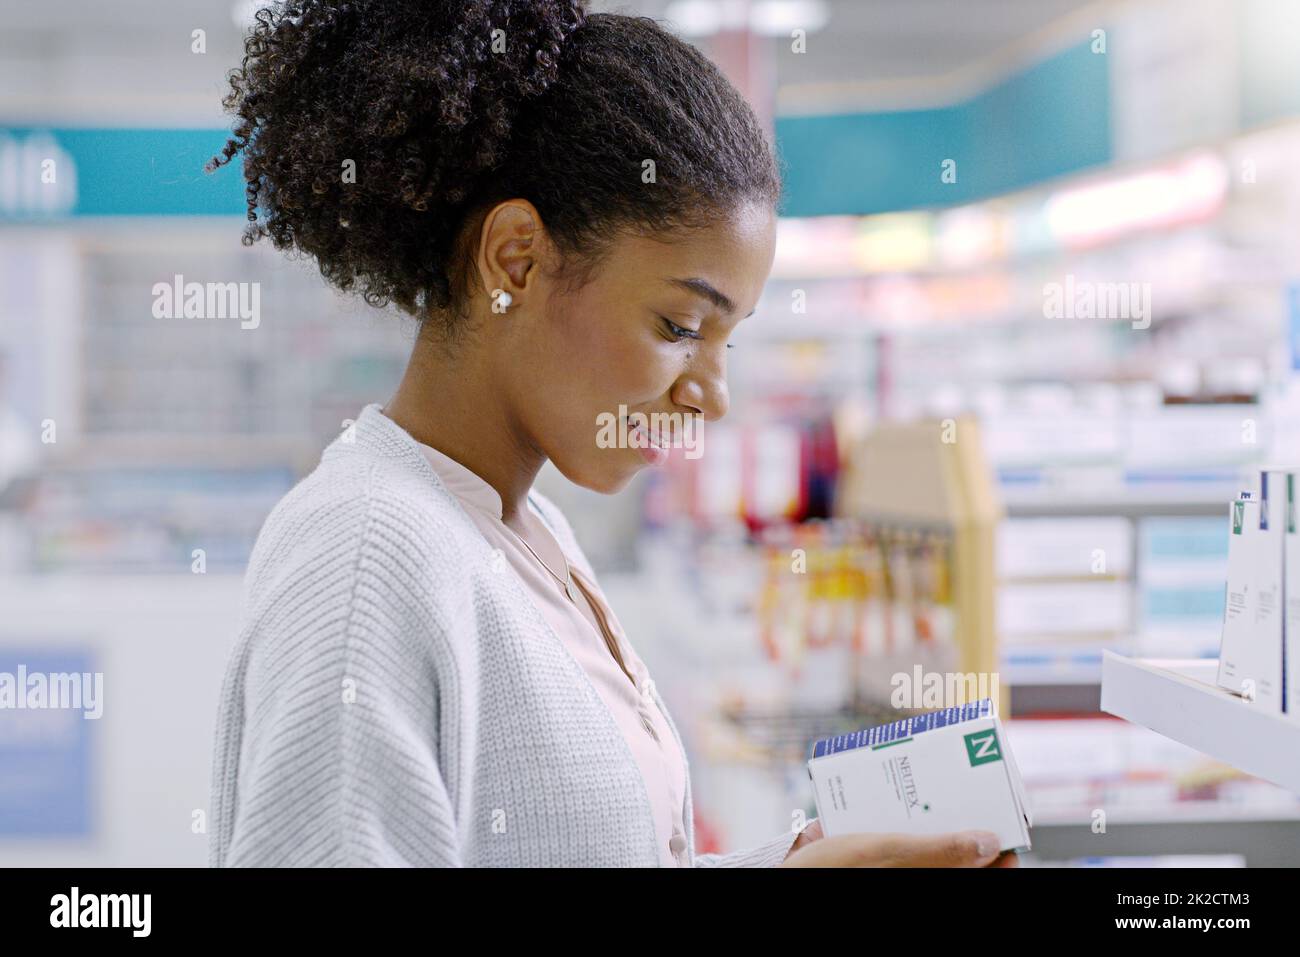 Scegliere sempre saggiamente quando si tratta di salute. Primo piano di una giovane donna attraente che legge attraverso il contenuto di un prodotto in una farmacia. Foto Stock